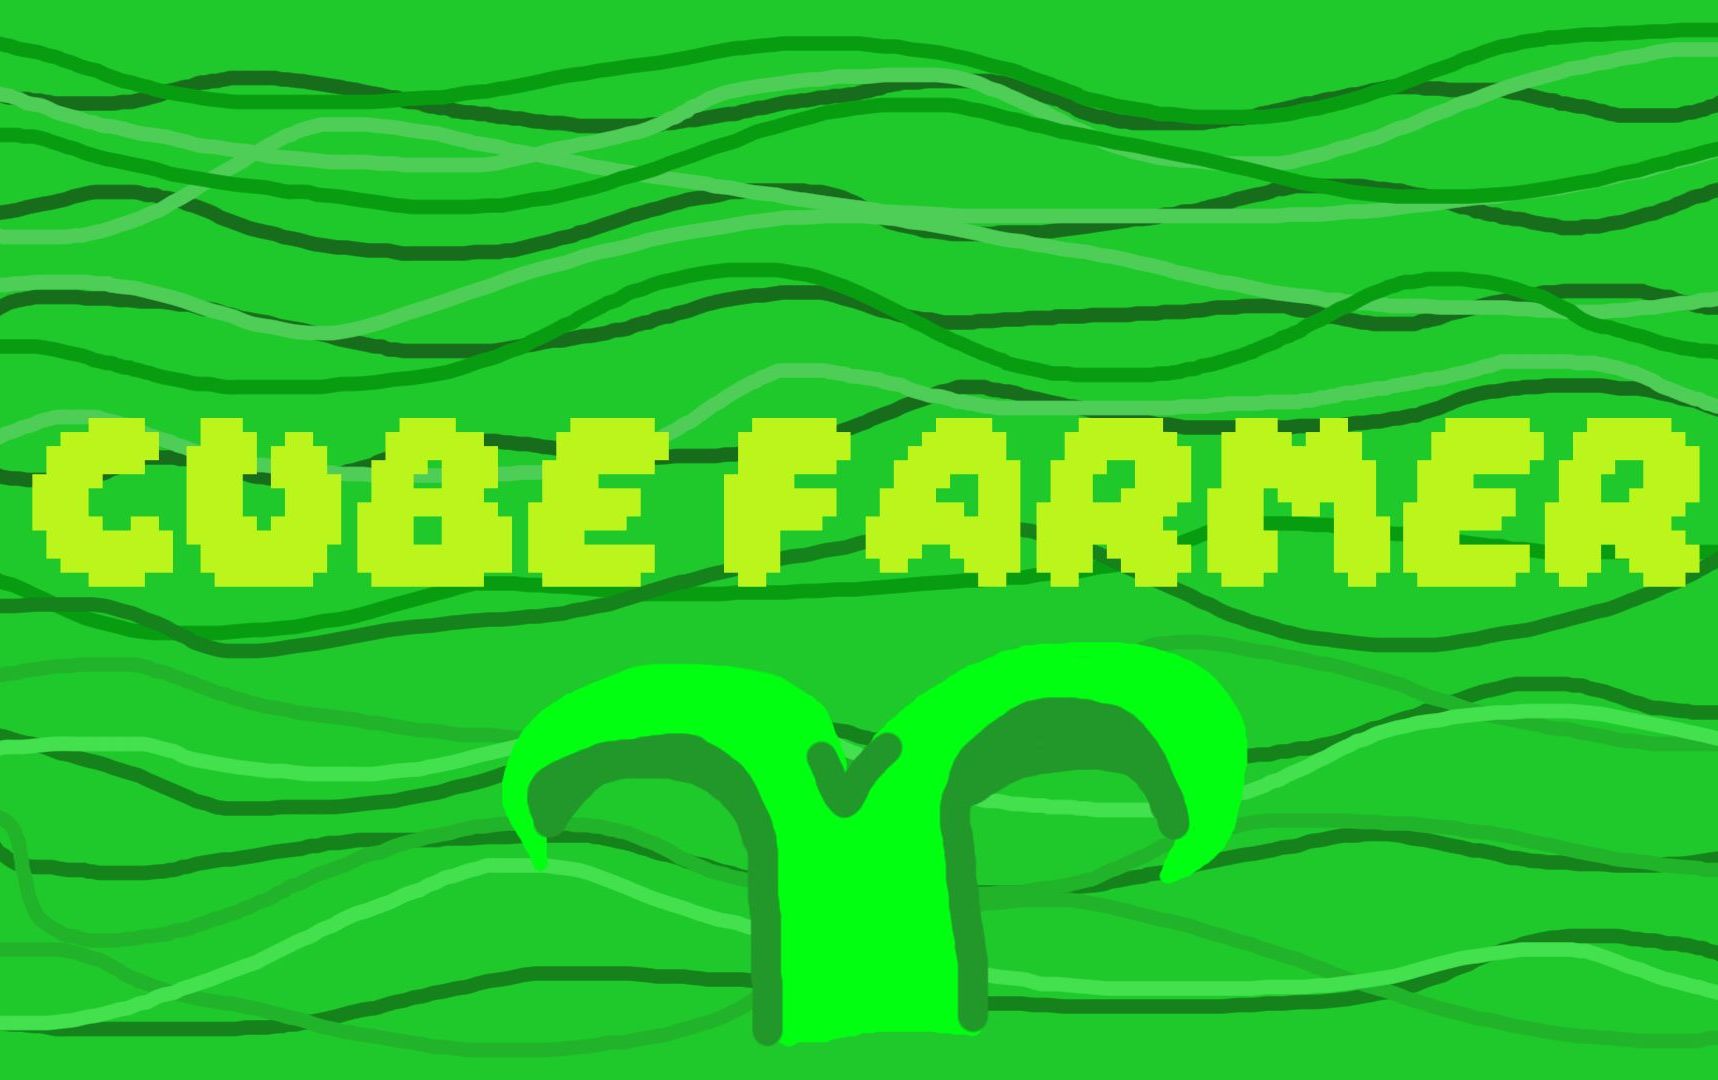 Cube Farmer